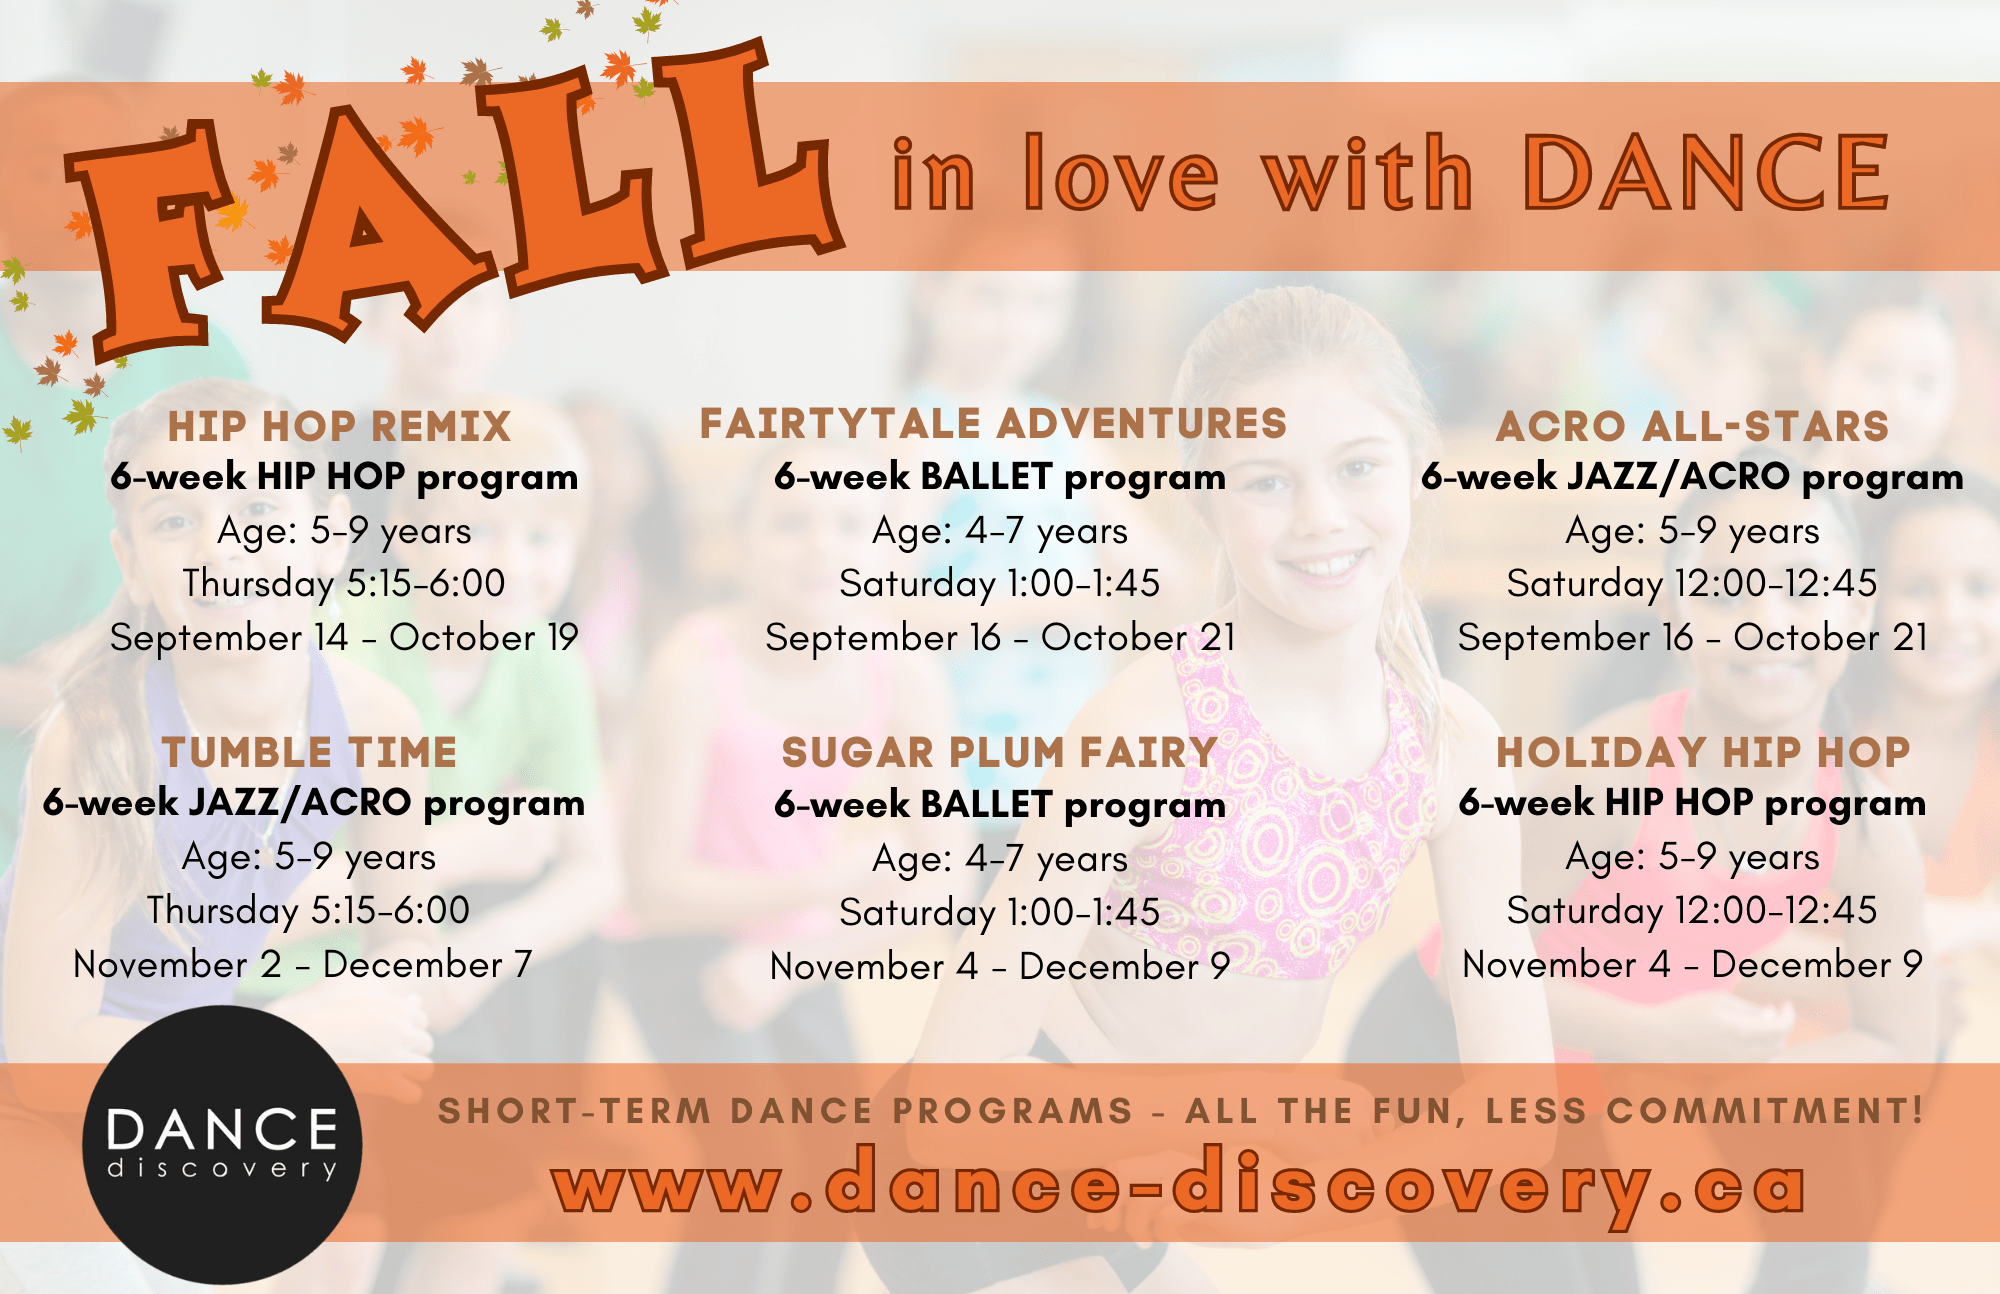 Programas de outono de descoberta de dança